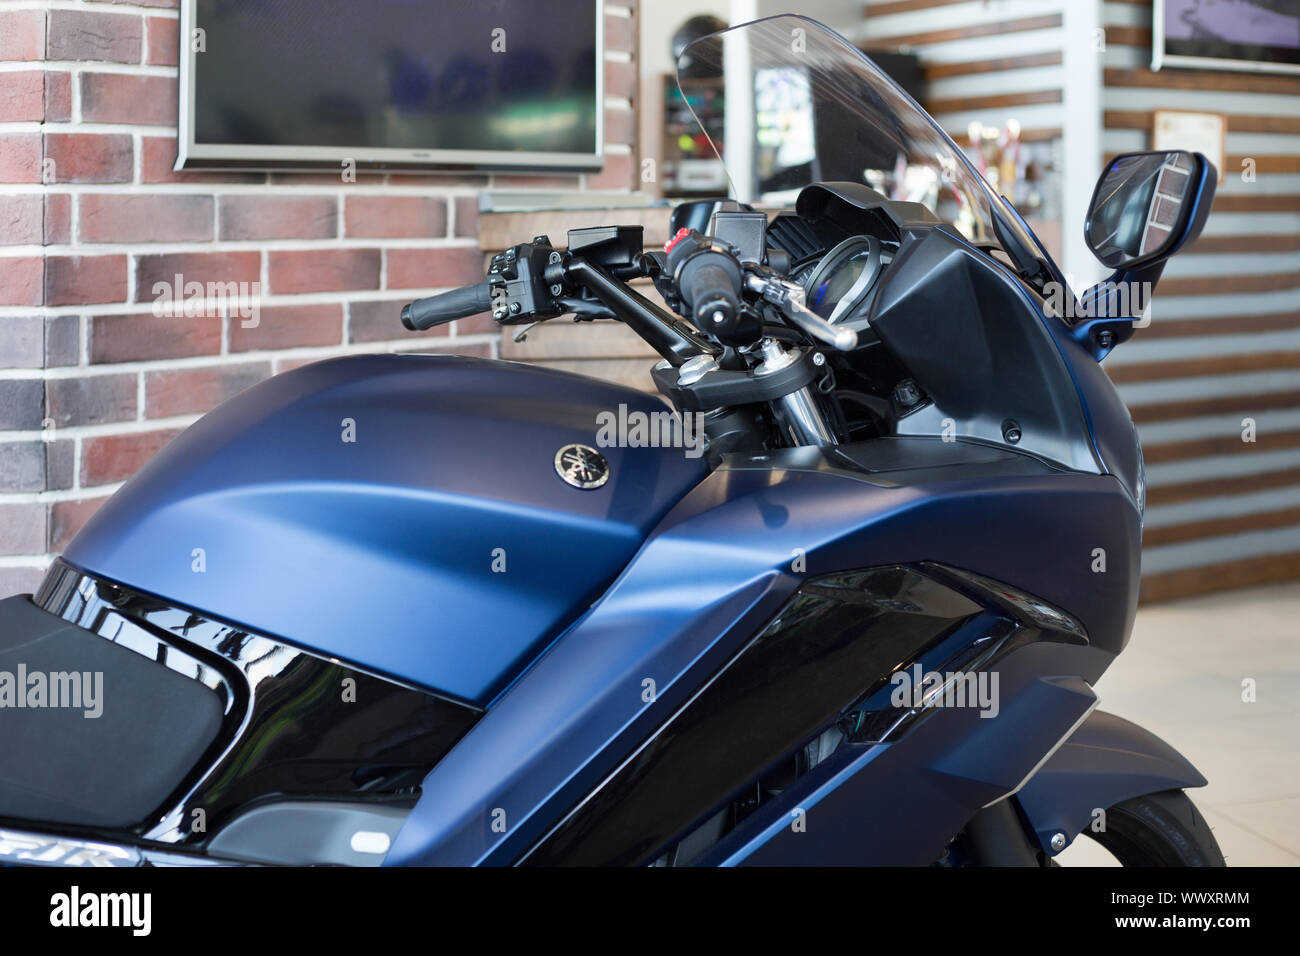 Russia, Izhevsk - Agosto 23, 2019: Yamaha Moto shop. Immagine ritagliata della nuova FJR1300 in moto store. Famoso marchio mondiale. Foto Stock